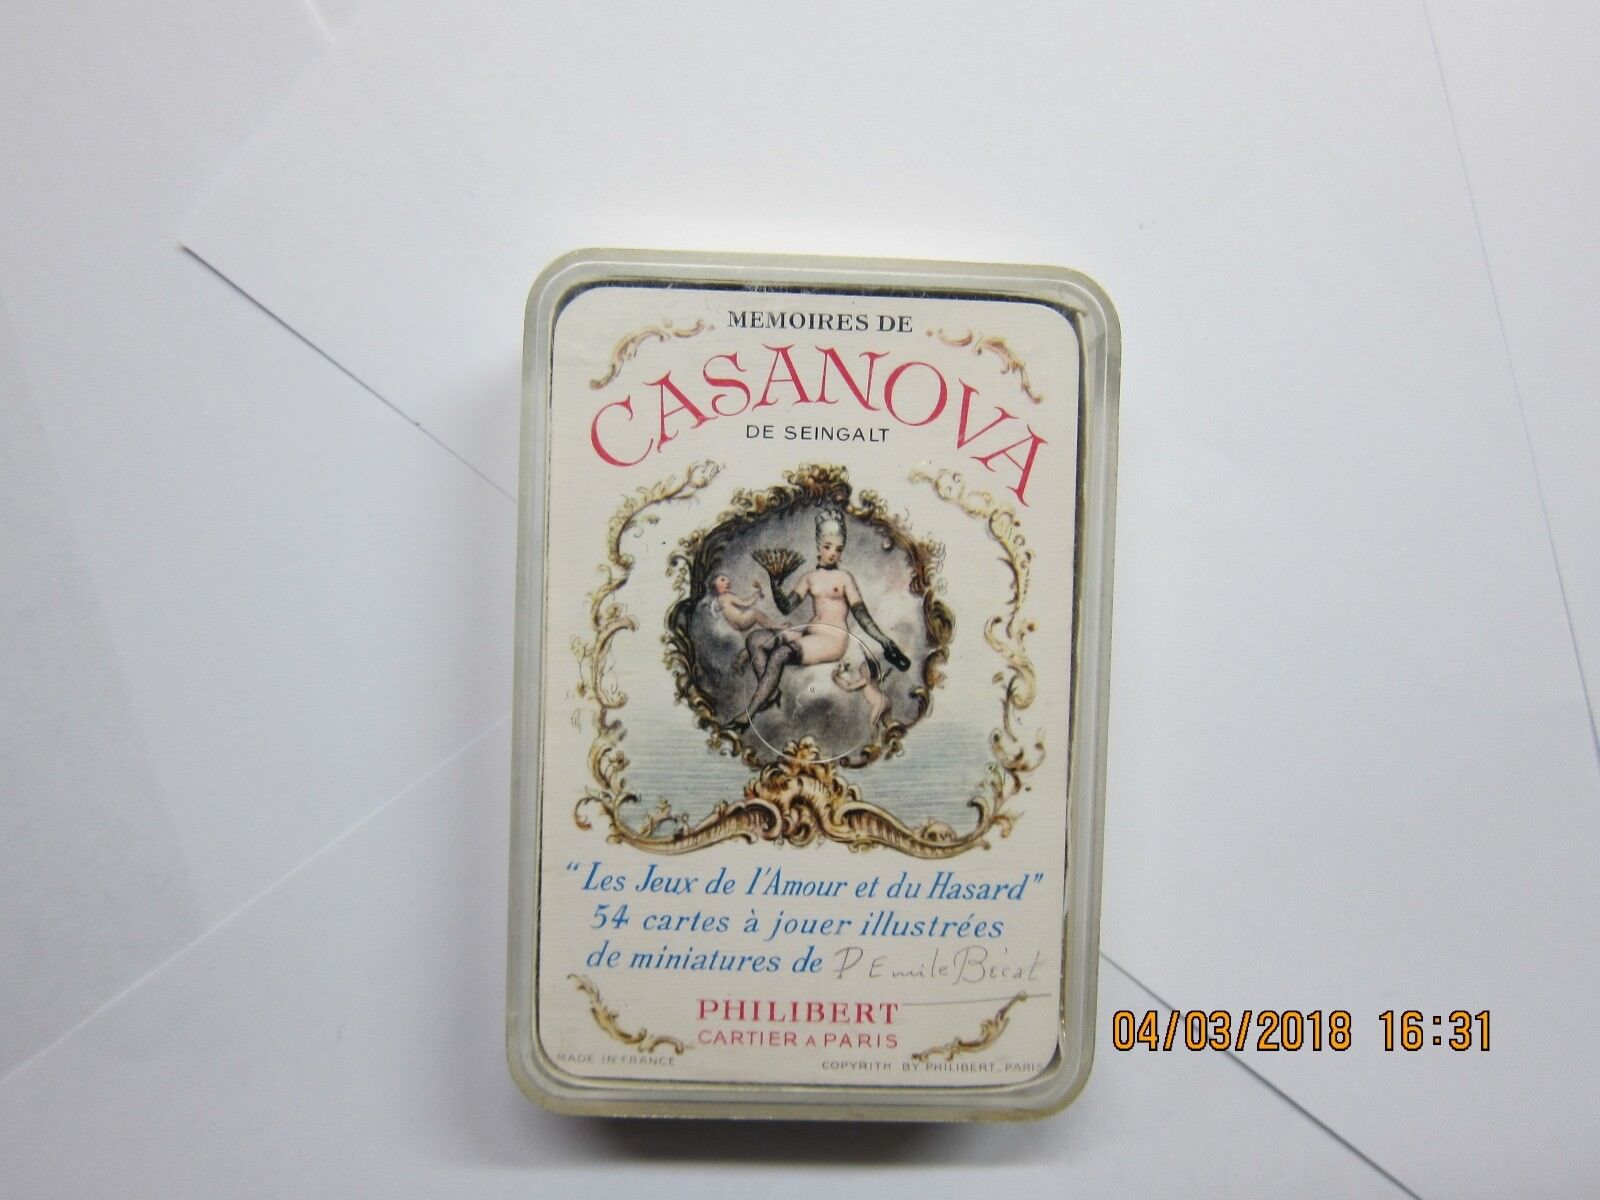 Mémoires de Casanova playing cards by Philibert. #6